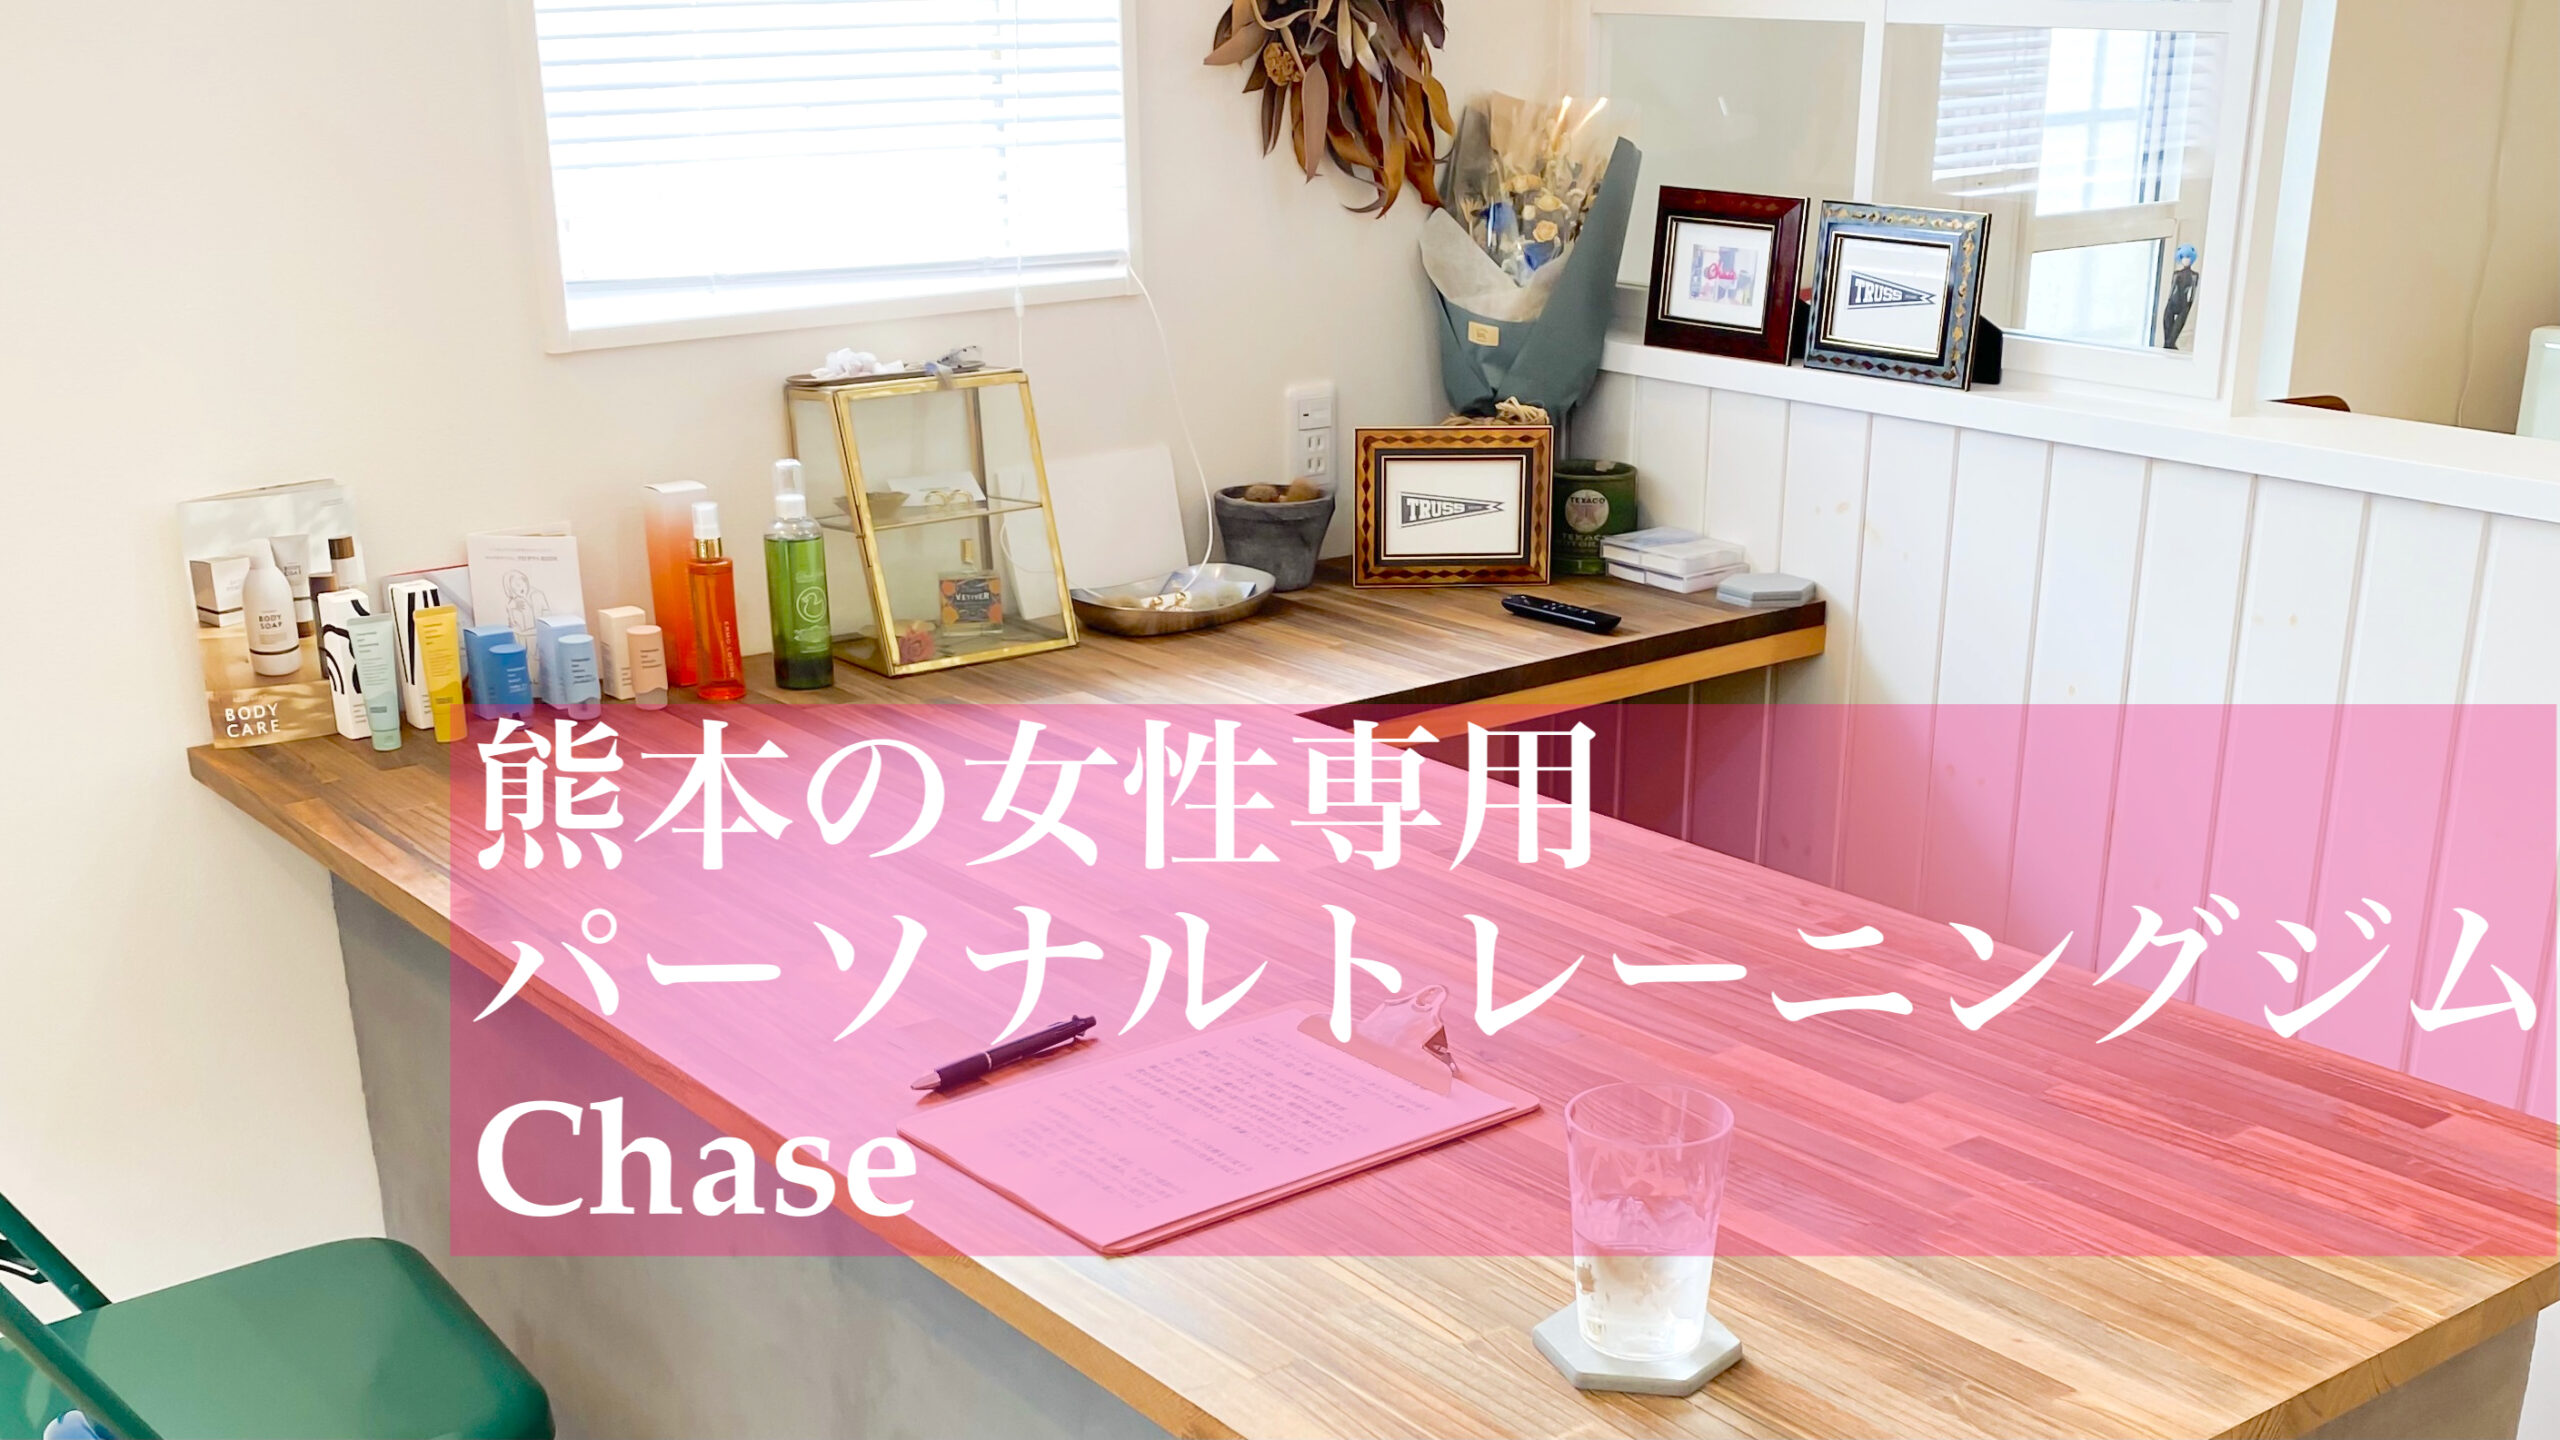 熊本市南区の女性専用ダイエット・パーソナルトレーニングジム | Chase